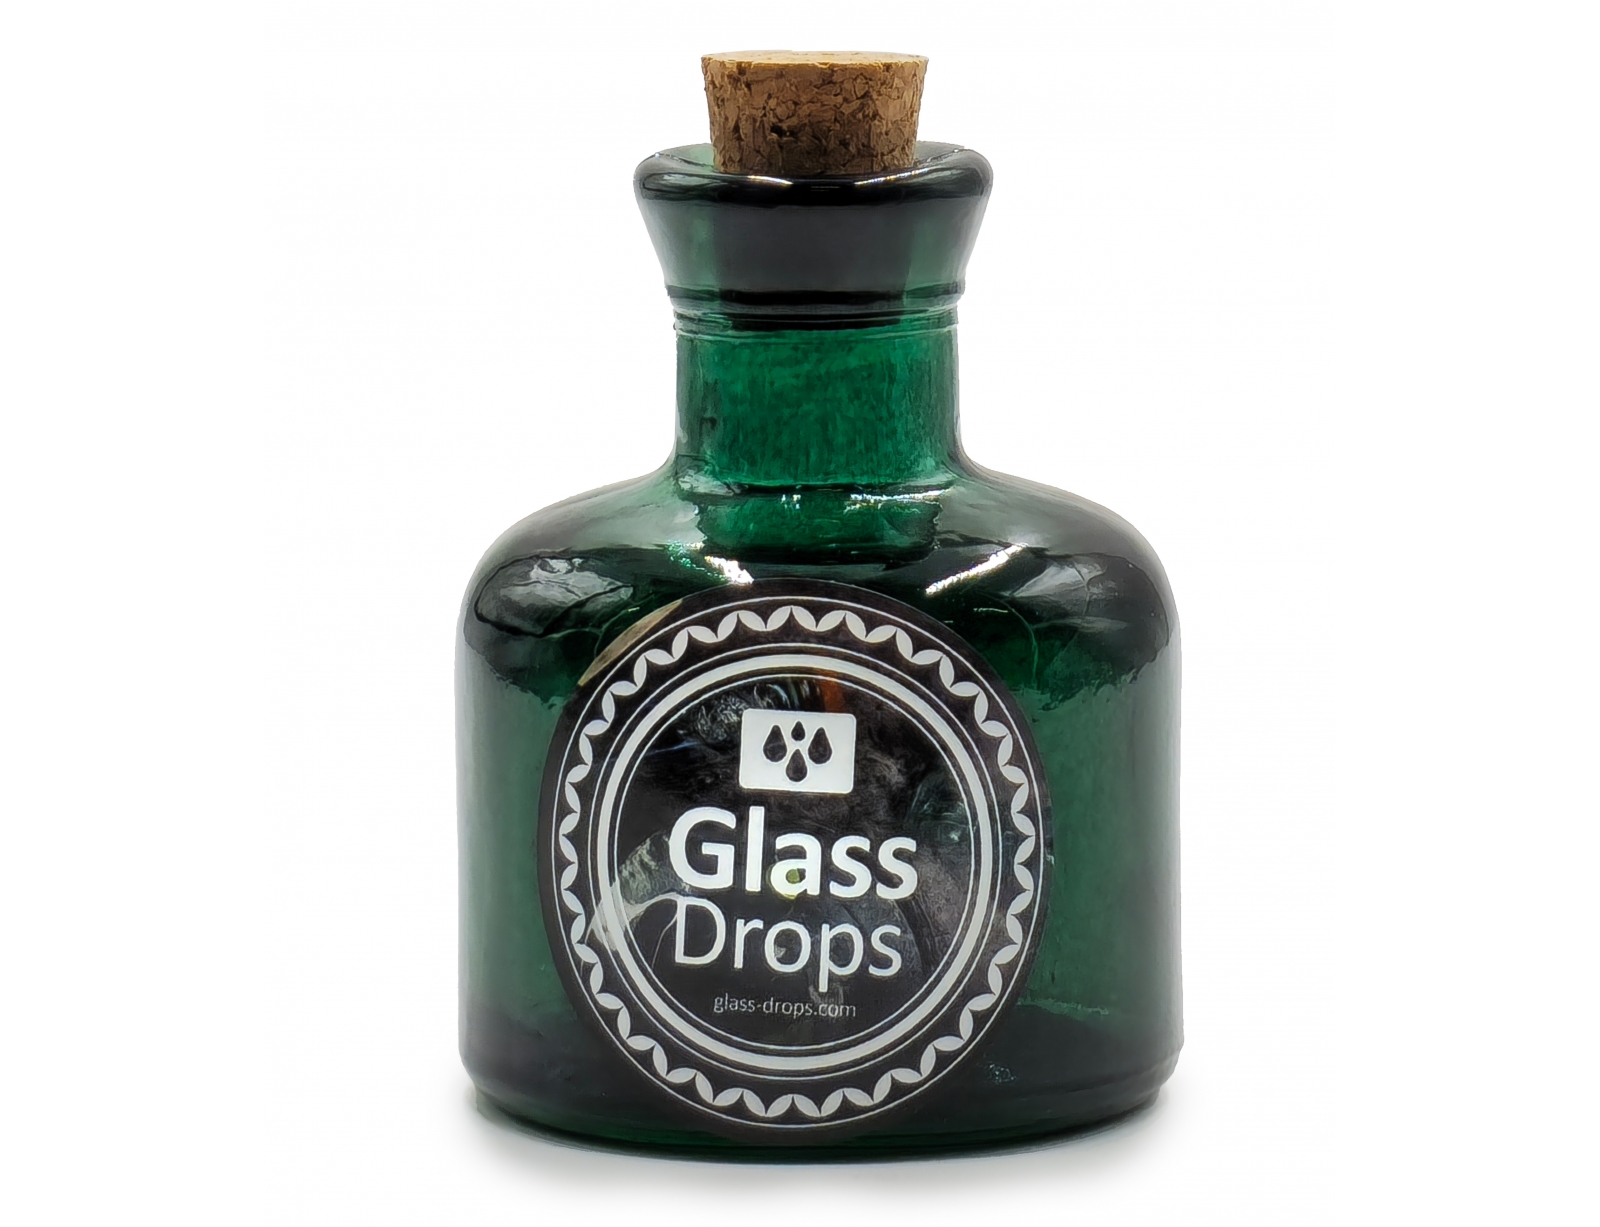 Εικόνα Διακοσμητικό Μπουκάλι με πώμα Glass Drops Ramos (5323DB734) Aπό 100% ανακυκλωμένο γυαλί, Xωρητικότητας 125ml, Διαστάσεων Ø 7 x Υ 10 cm, Albahaca